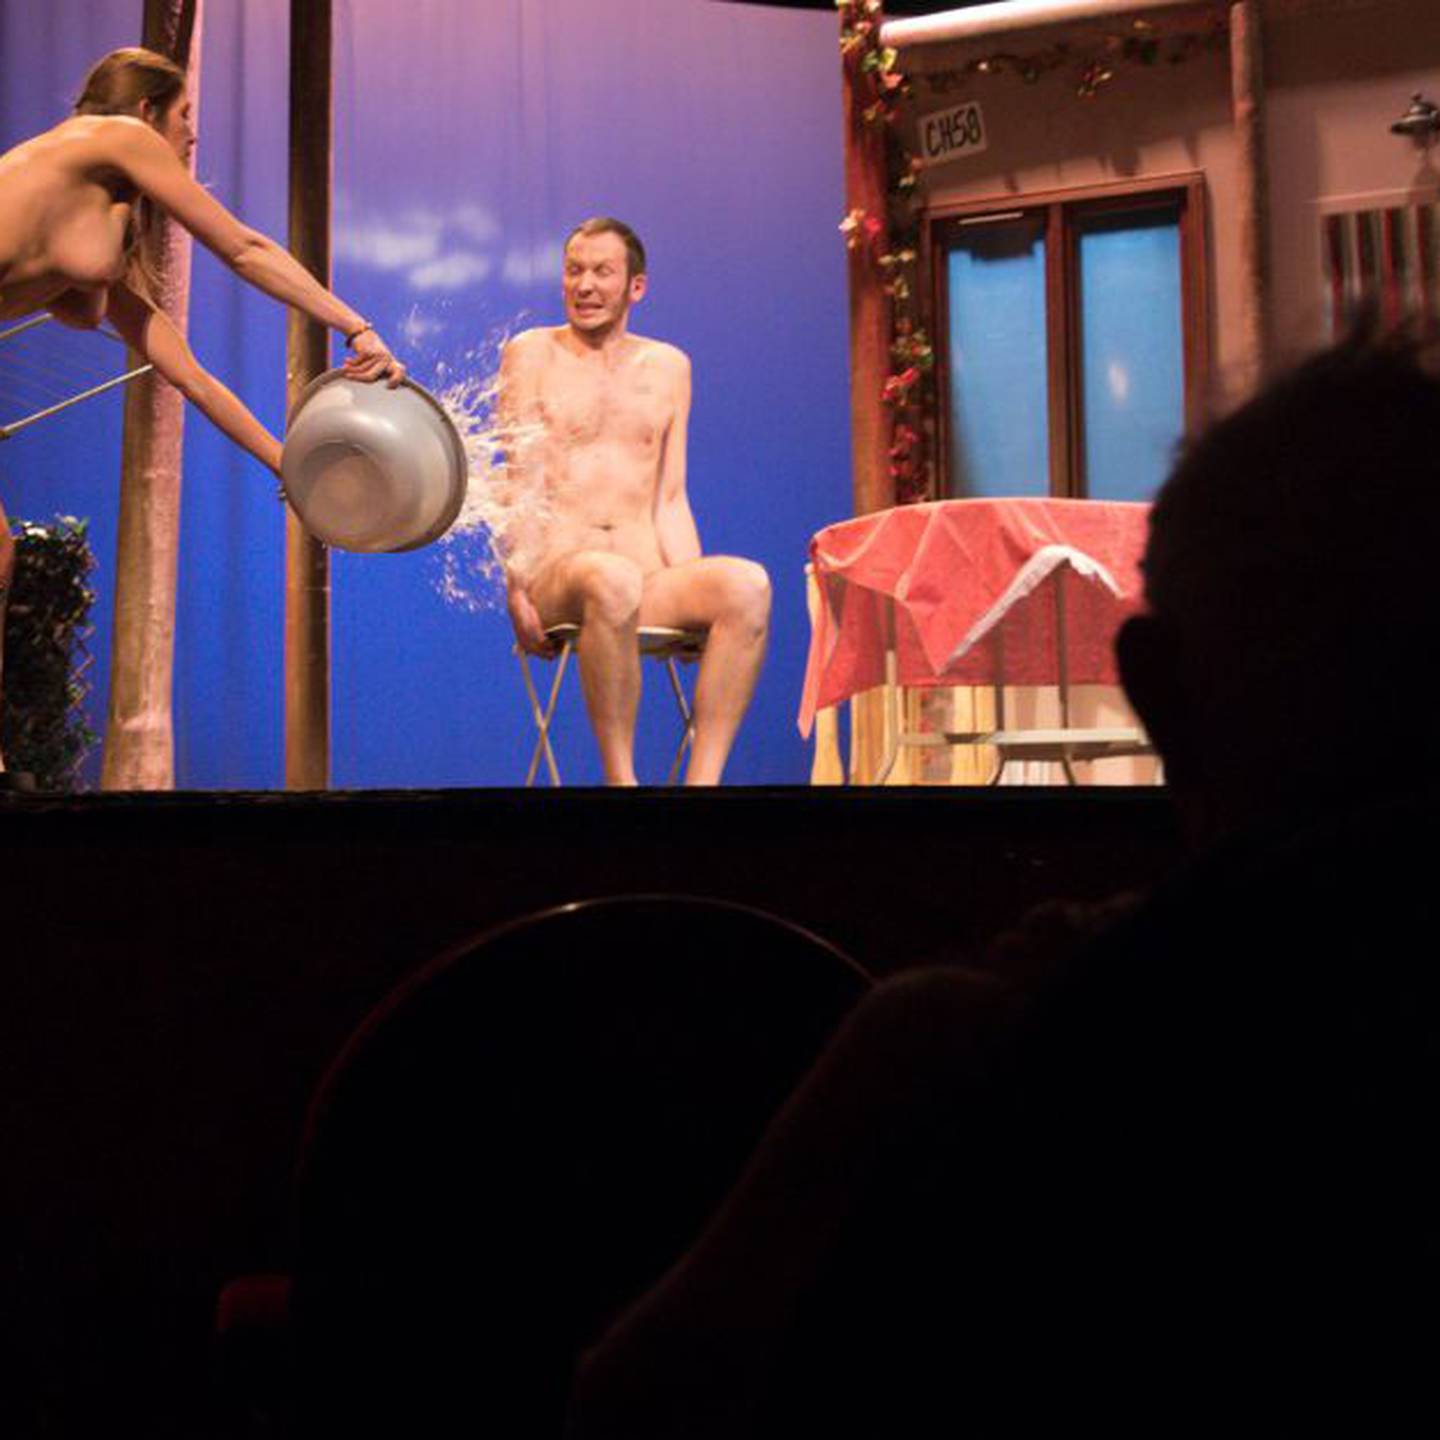 Teatros nudistas ¿Iría desnudo al teatro? : ¿Iría desnudo al teatro?